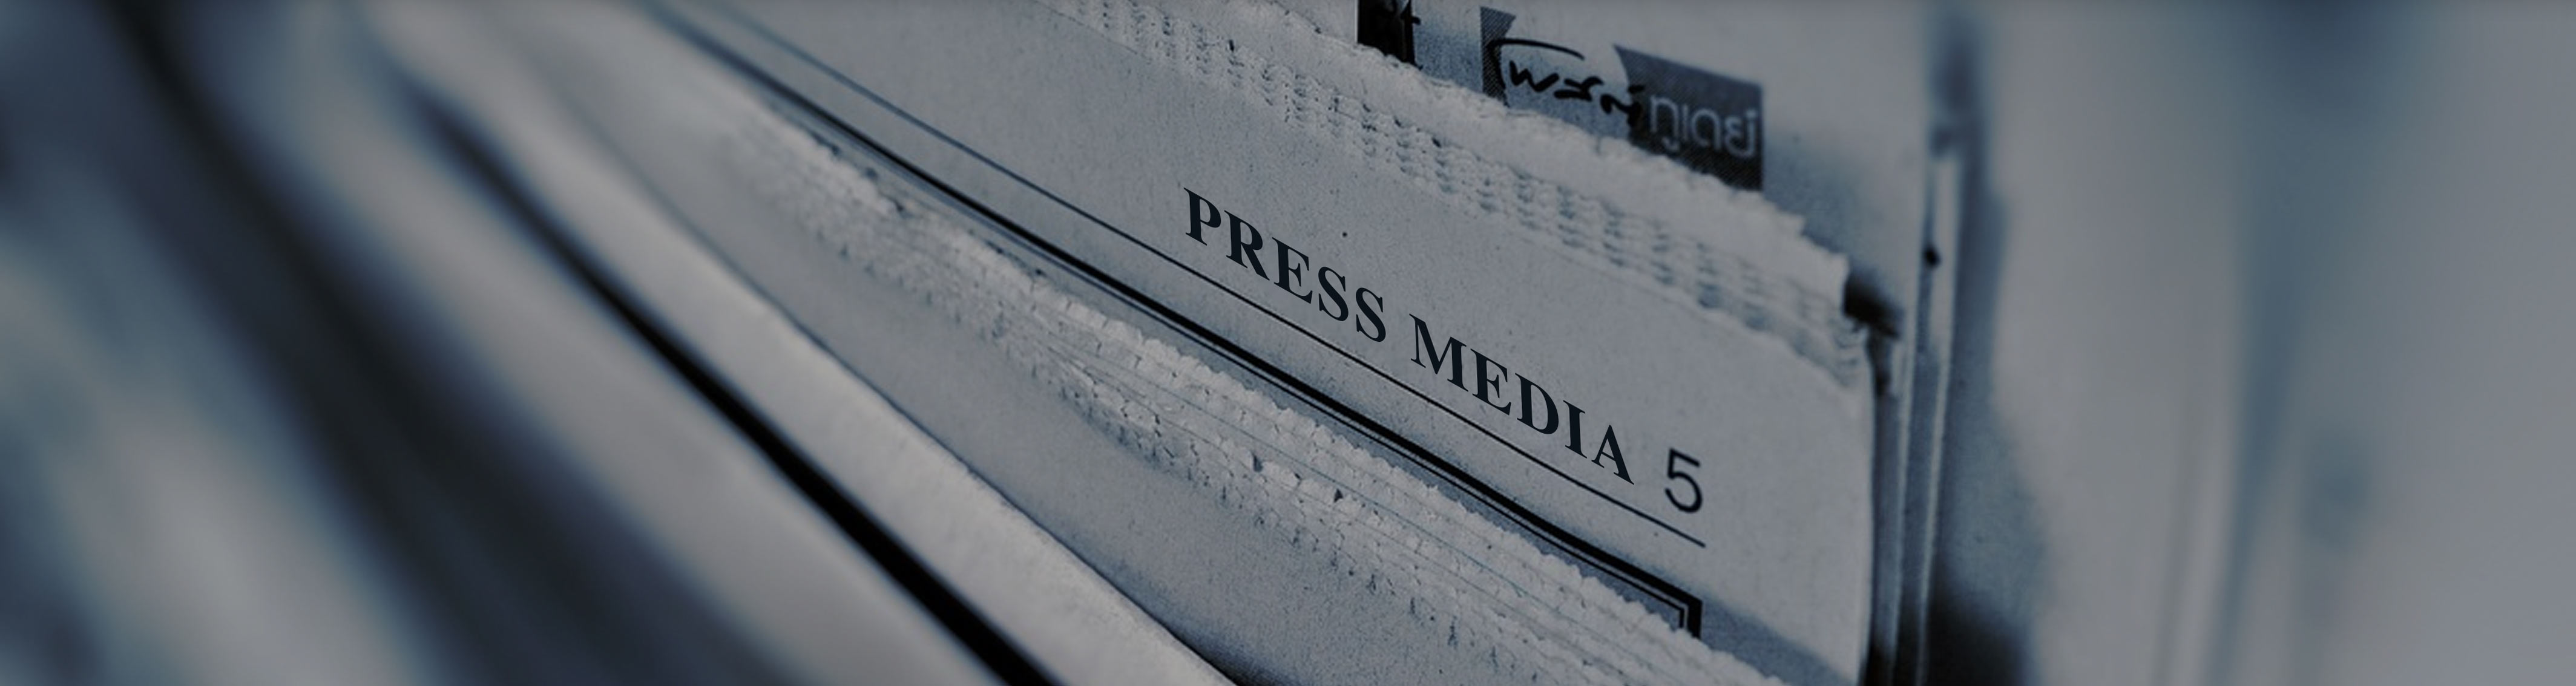 Press Media